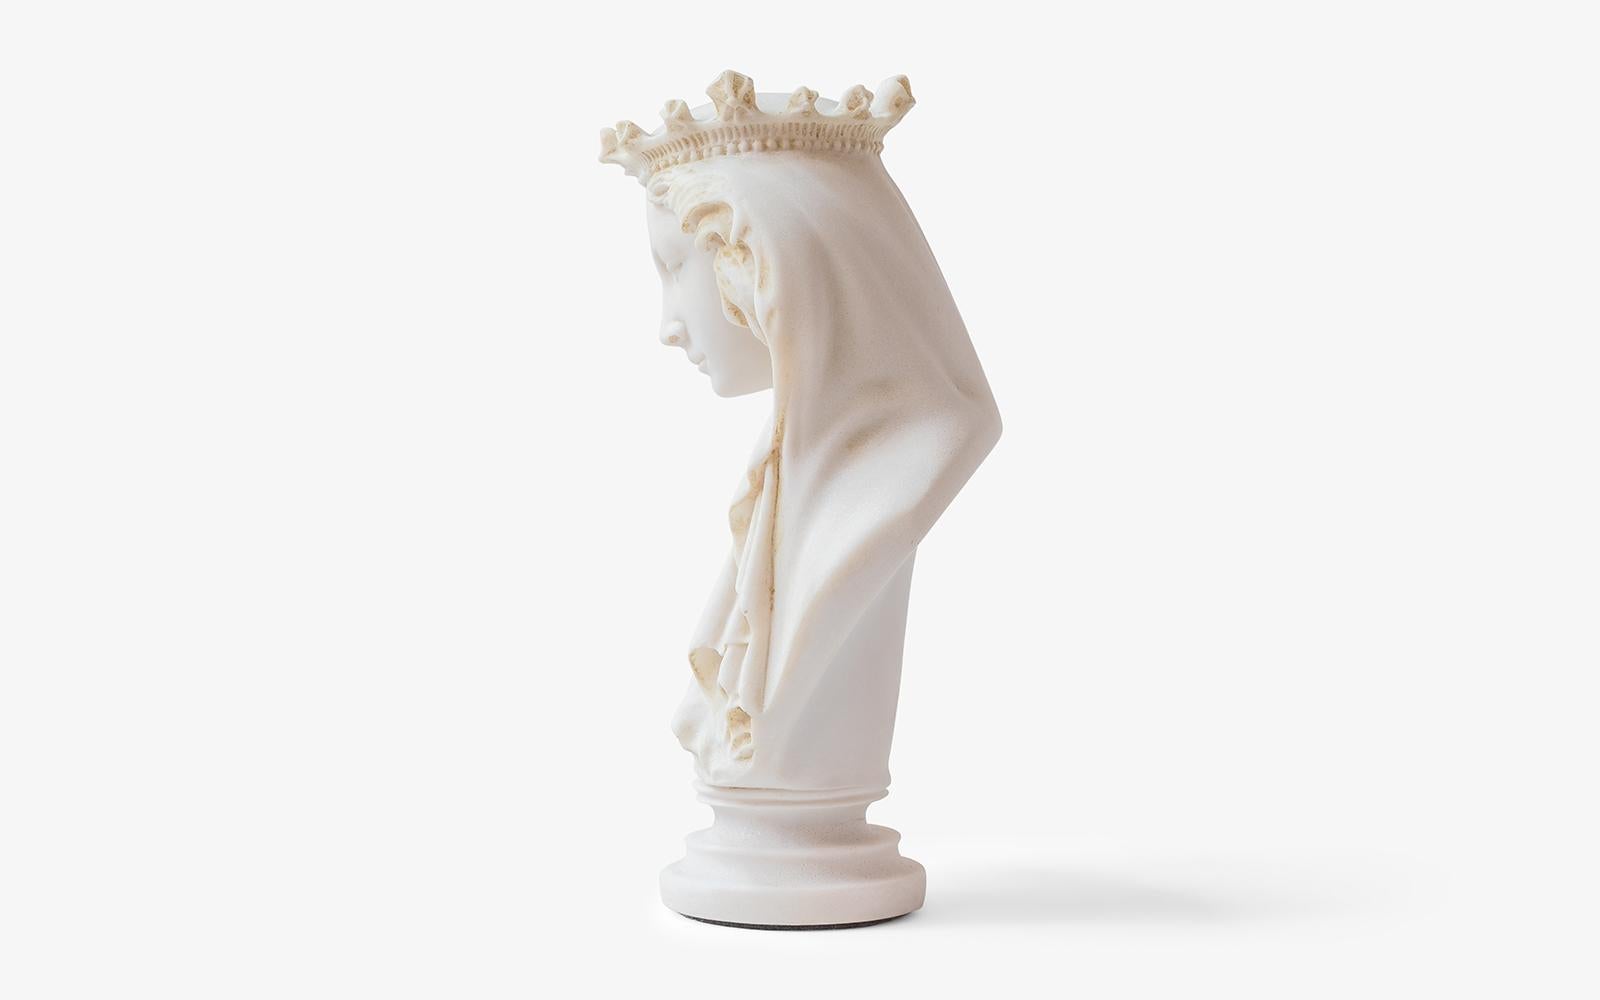 Cette sculpture représente la Vierge Marie, connue comme la mère de Jésus dans la mythologie chrétienne. Pesant 1,5 kg, cette sculpture est produite à partir de poudre de marbre pressée et réalisée à l'aide des moules originaux du musée. Il peut